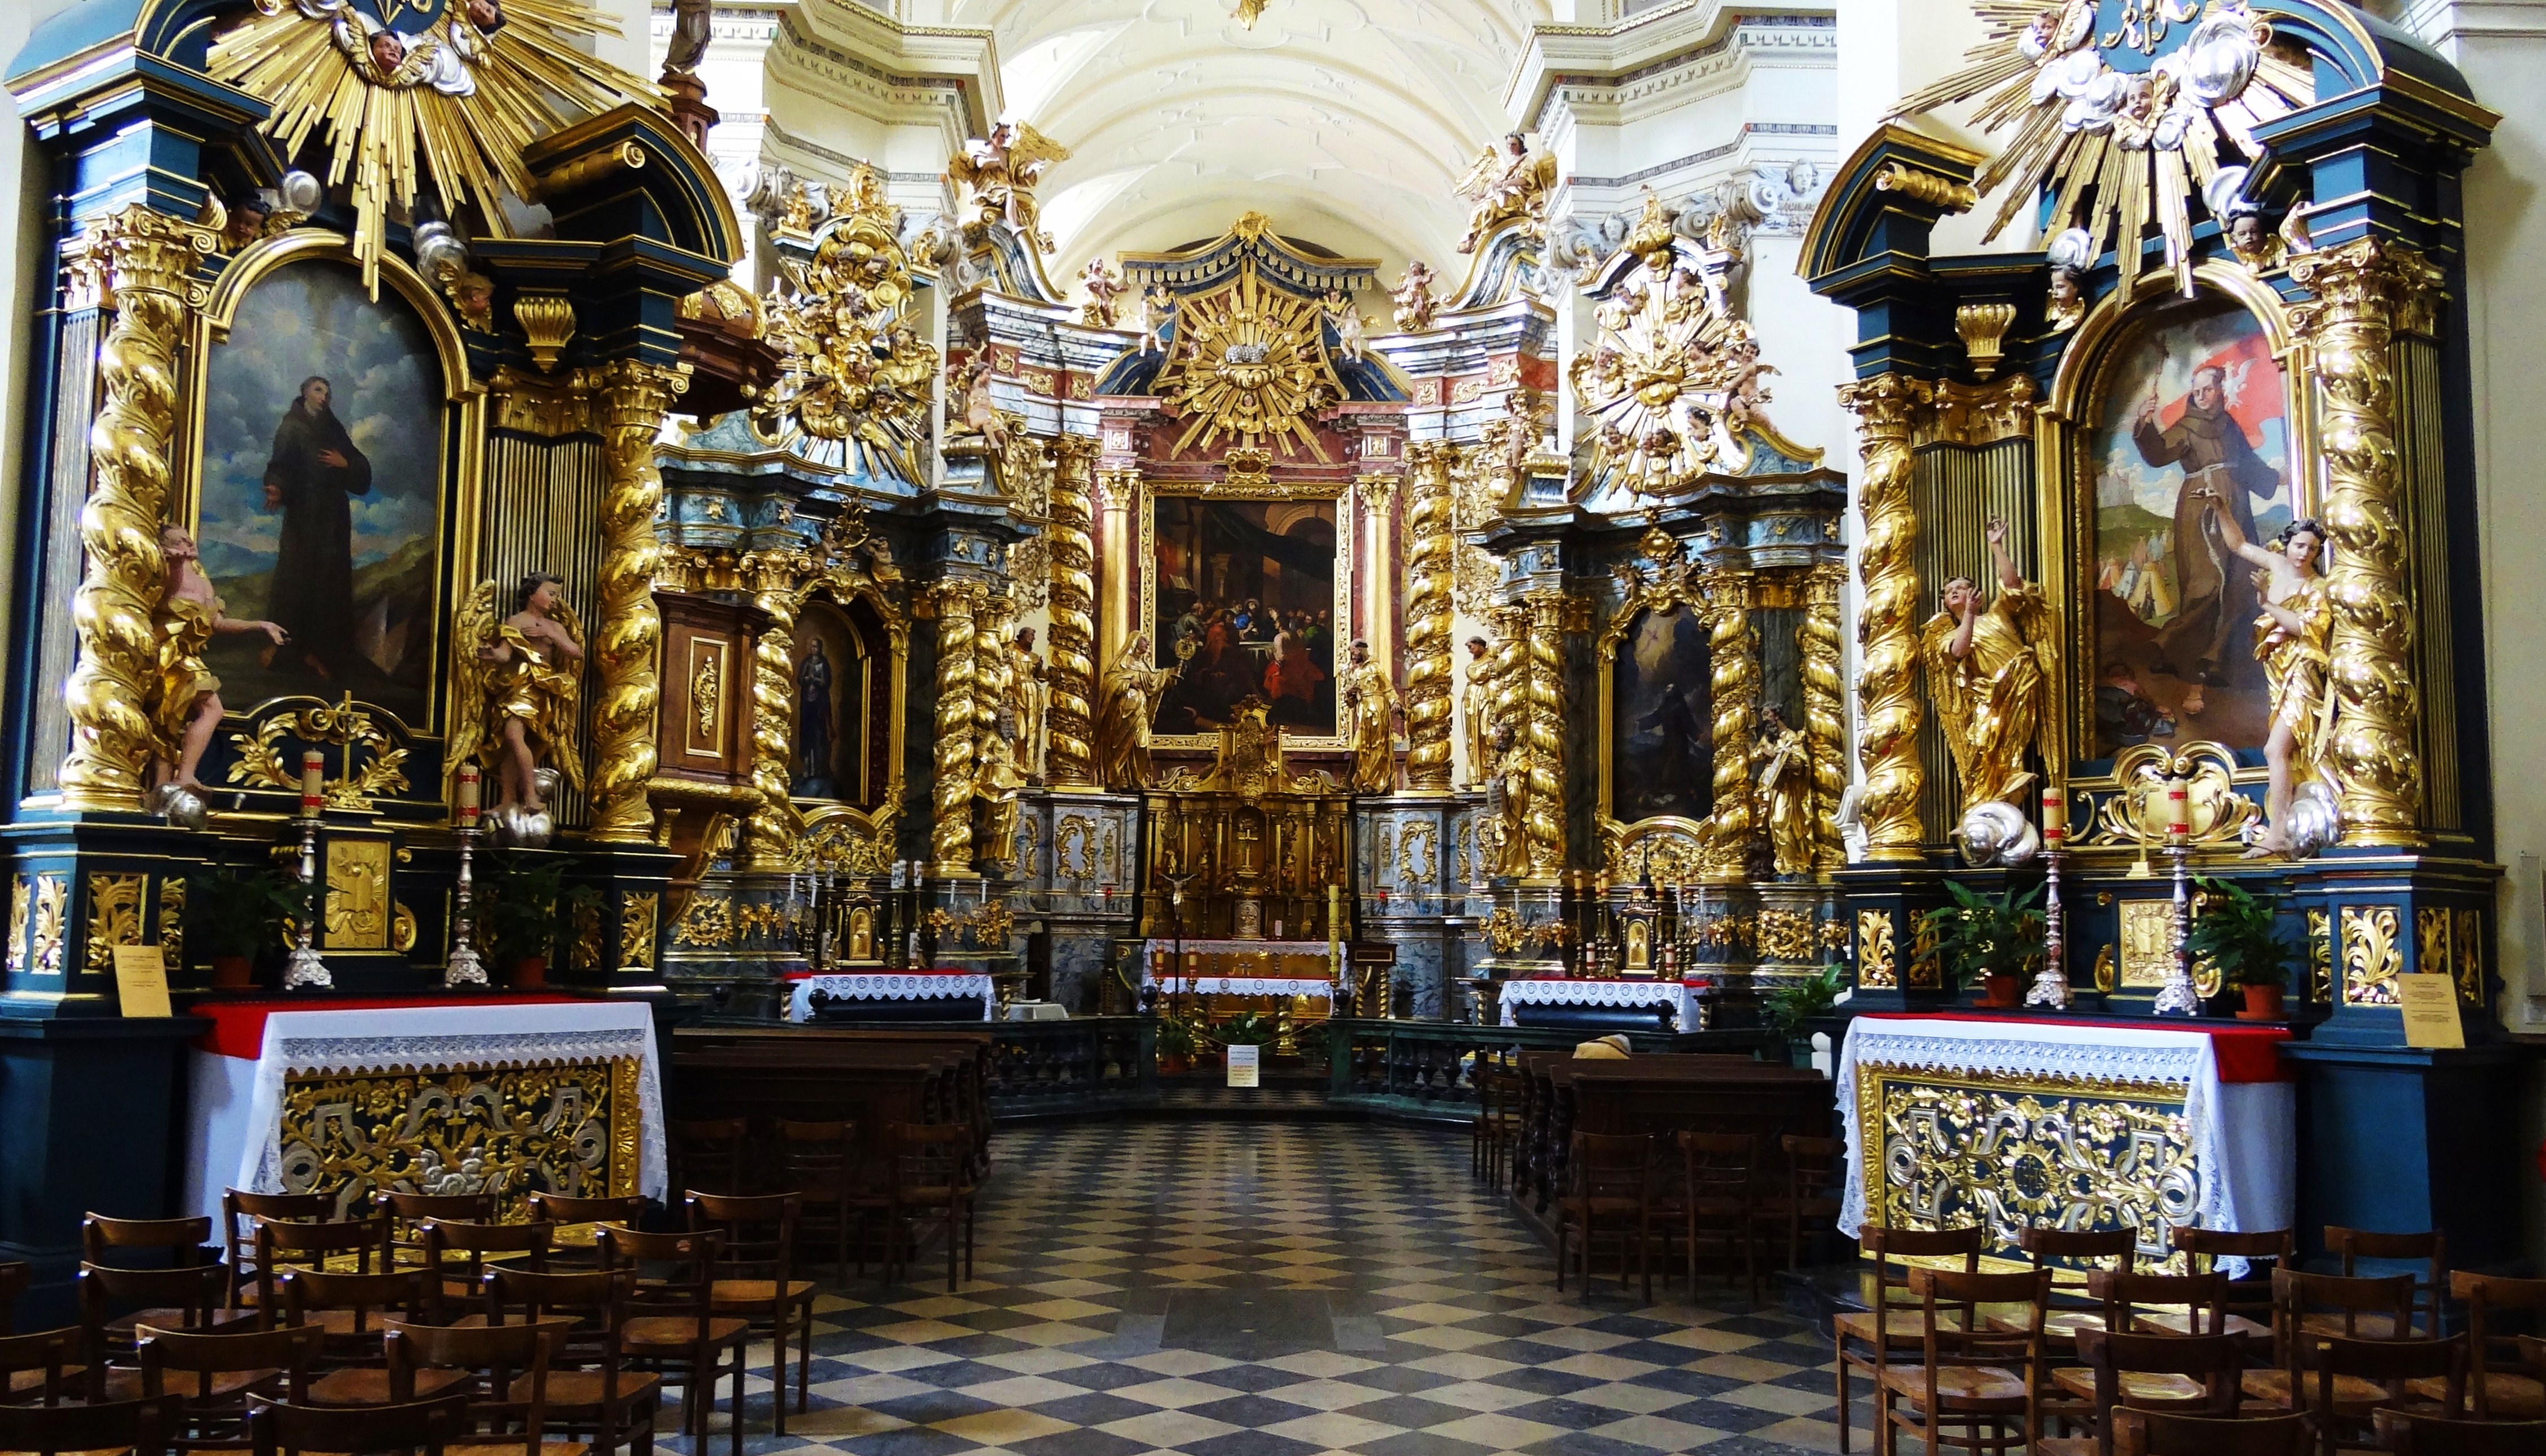 Foto: Kościół św. Bernardyna ze Sieny - Kraków (Lesser Poland Voivodeship), Polonia